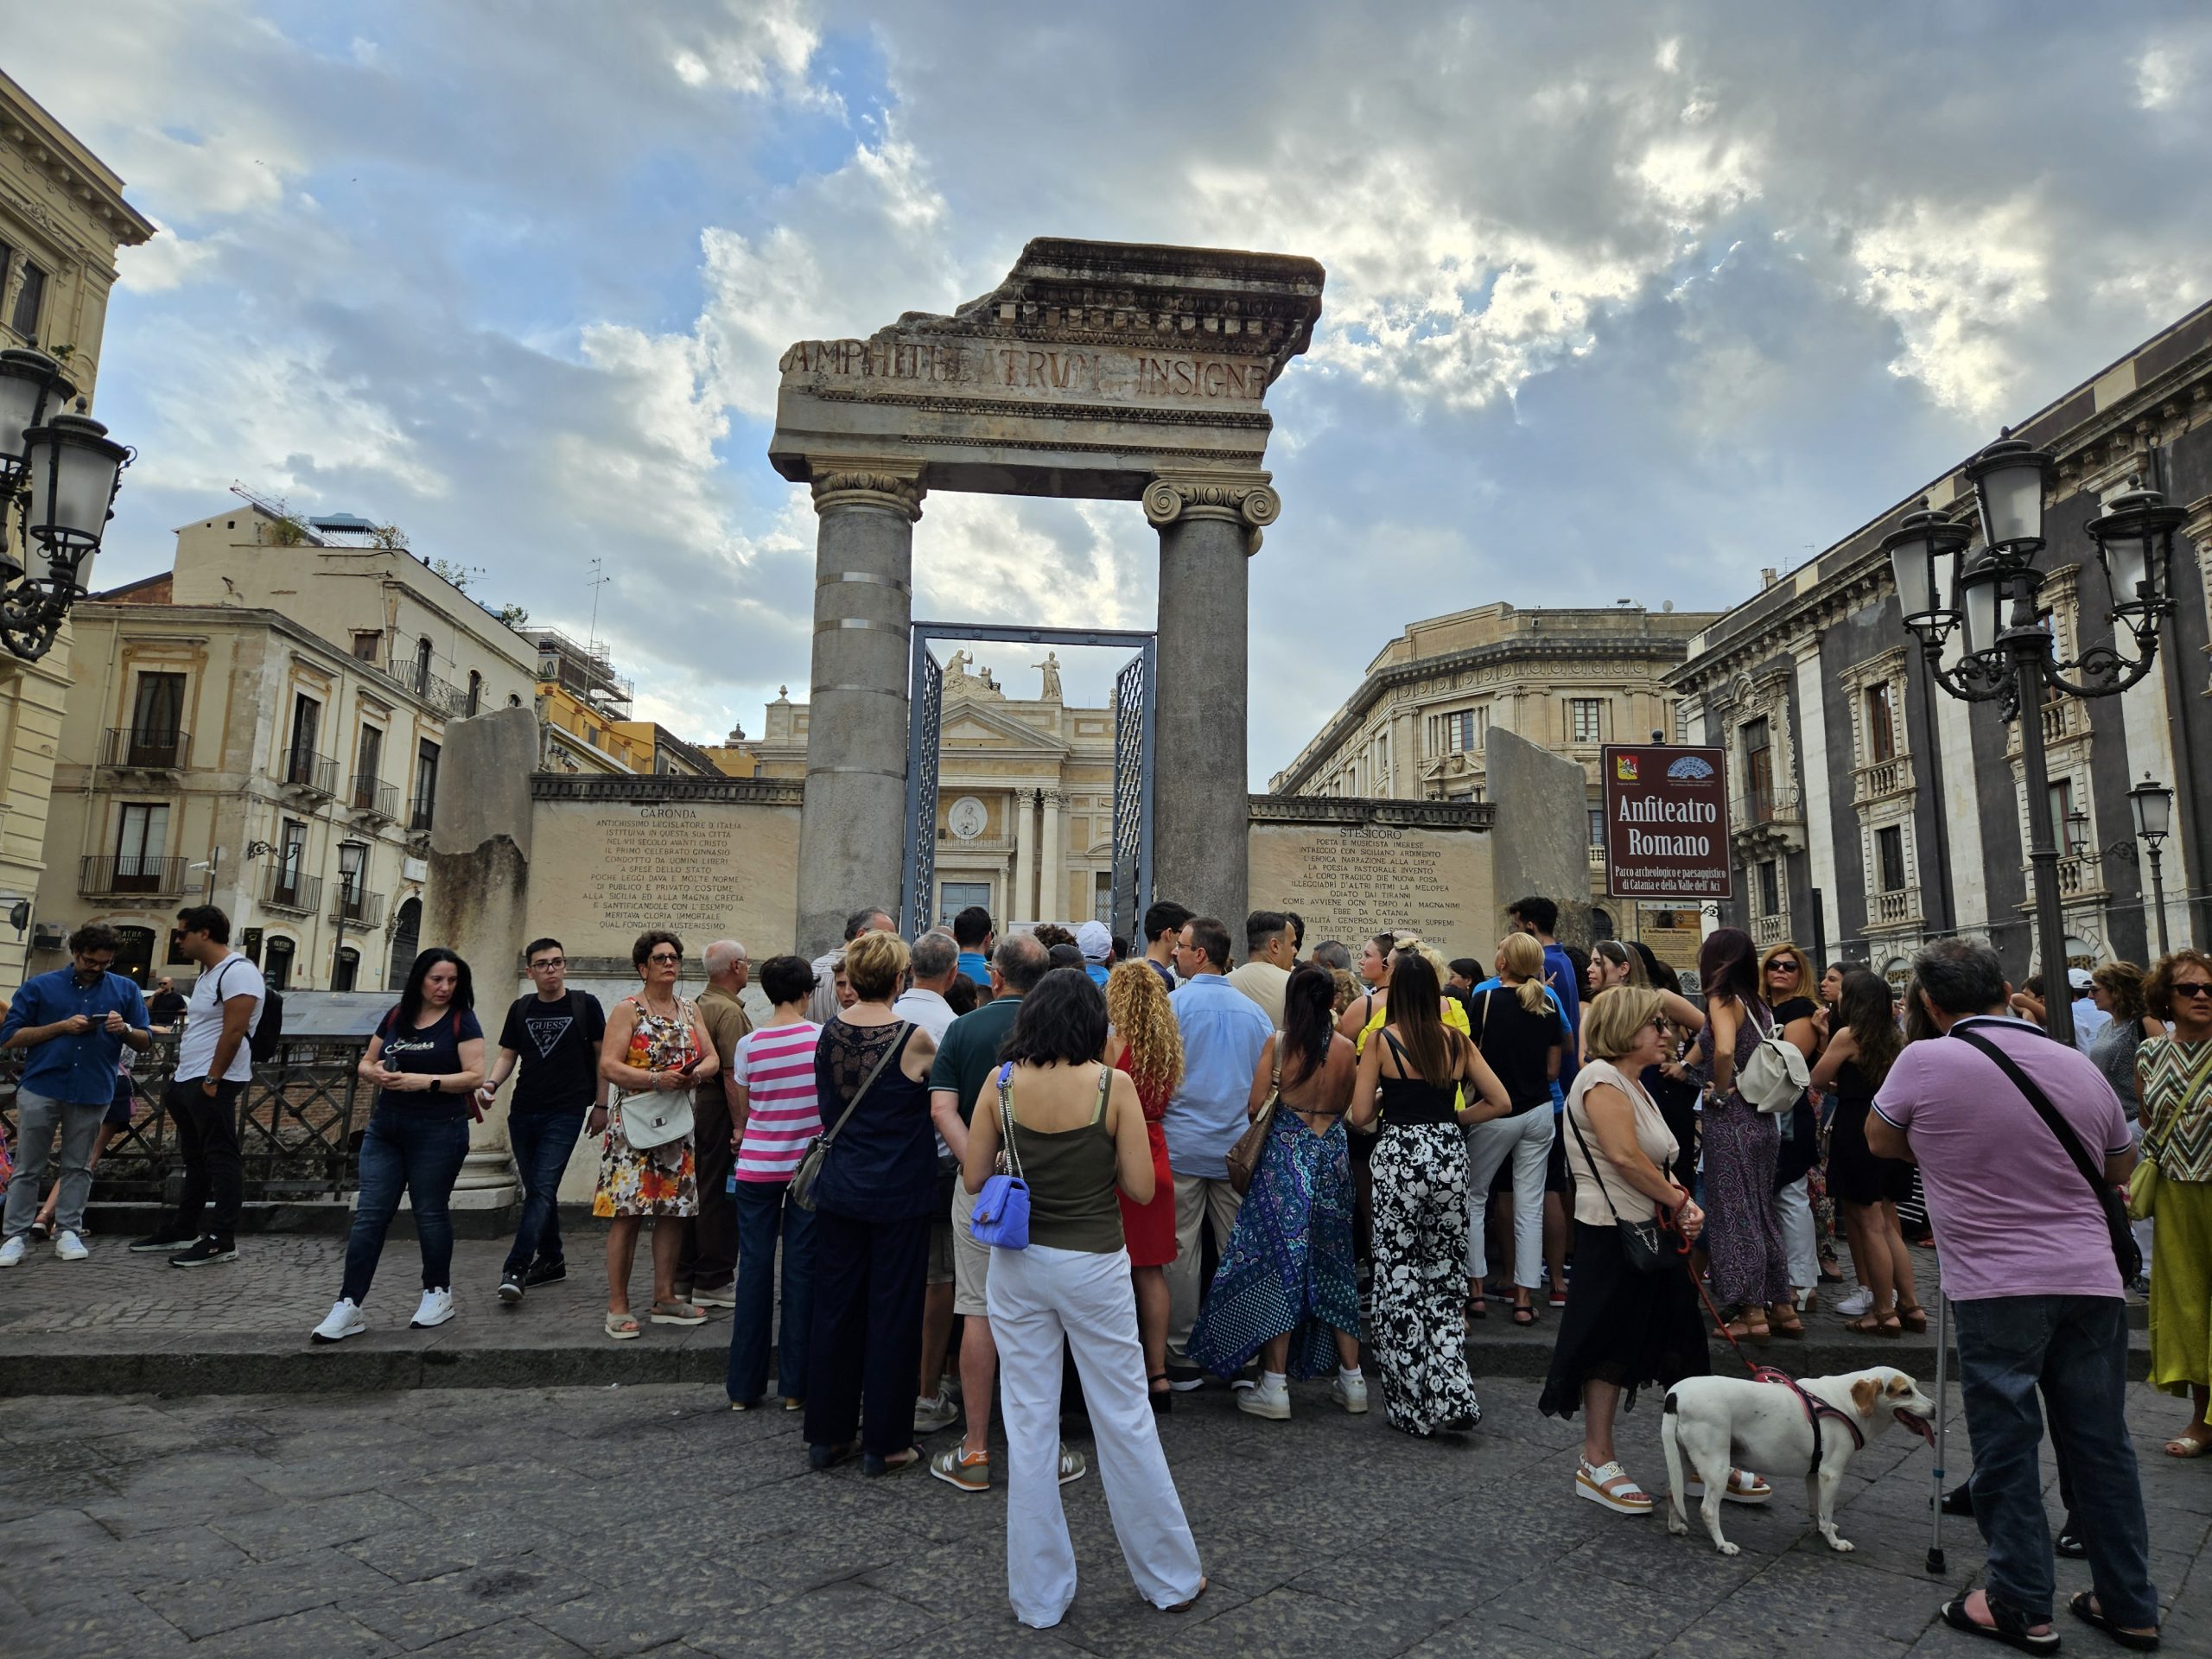 Riaperto l’Anfiteatro Romano di Piazza Stesicoro. Folla al nuovo esordio